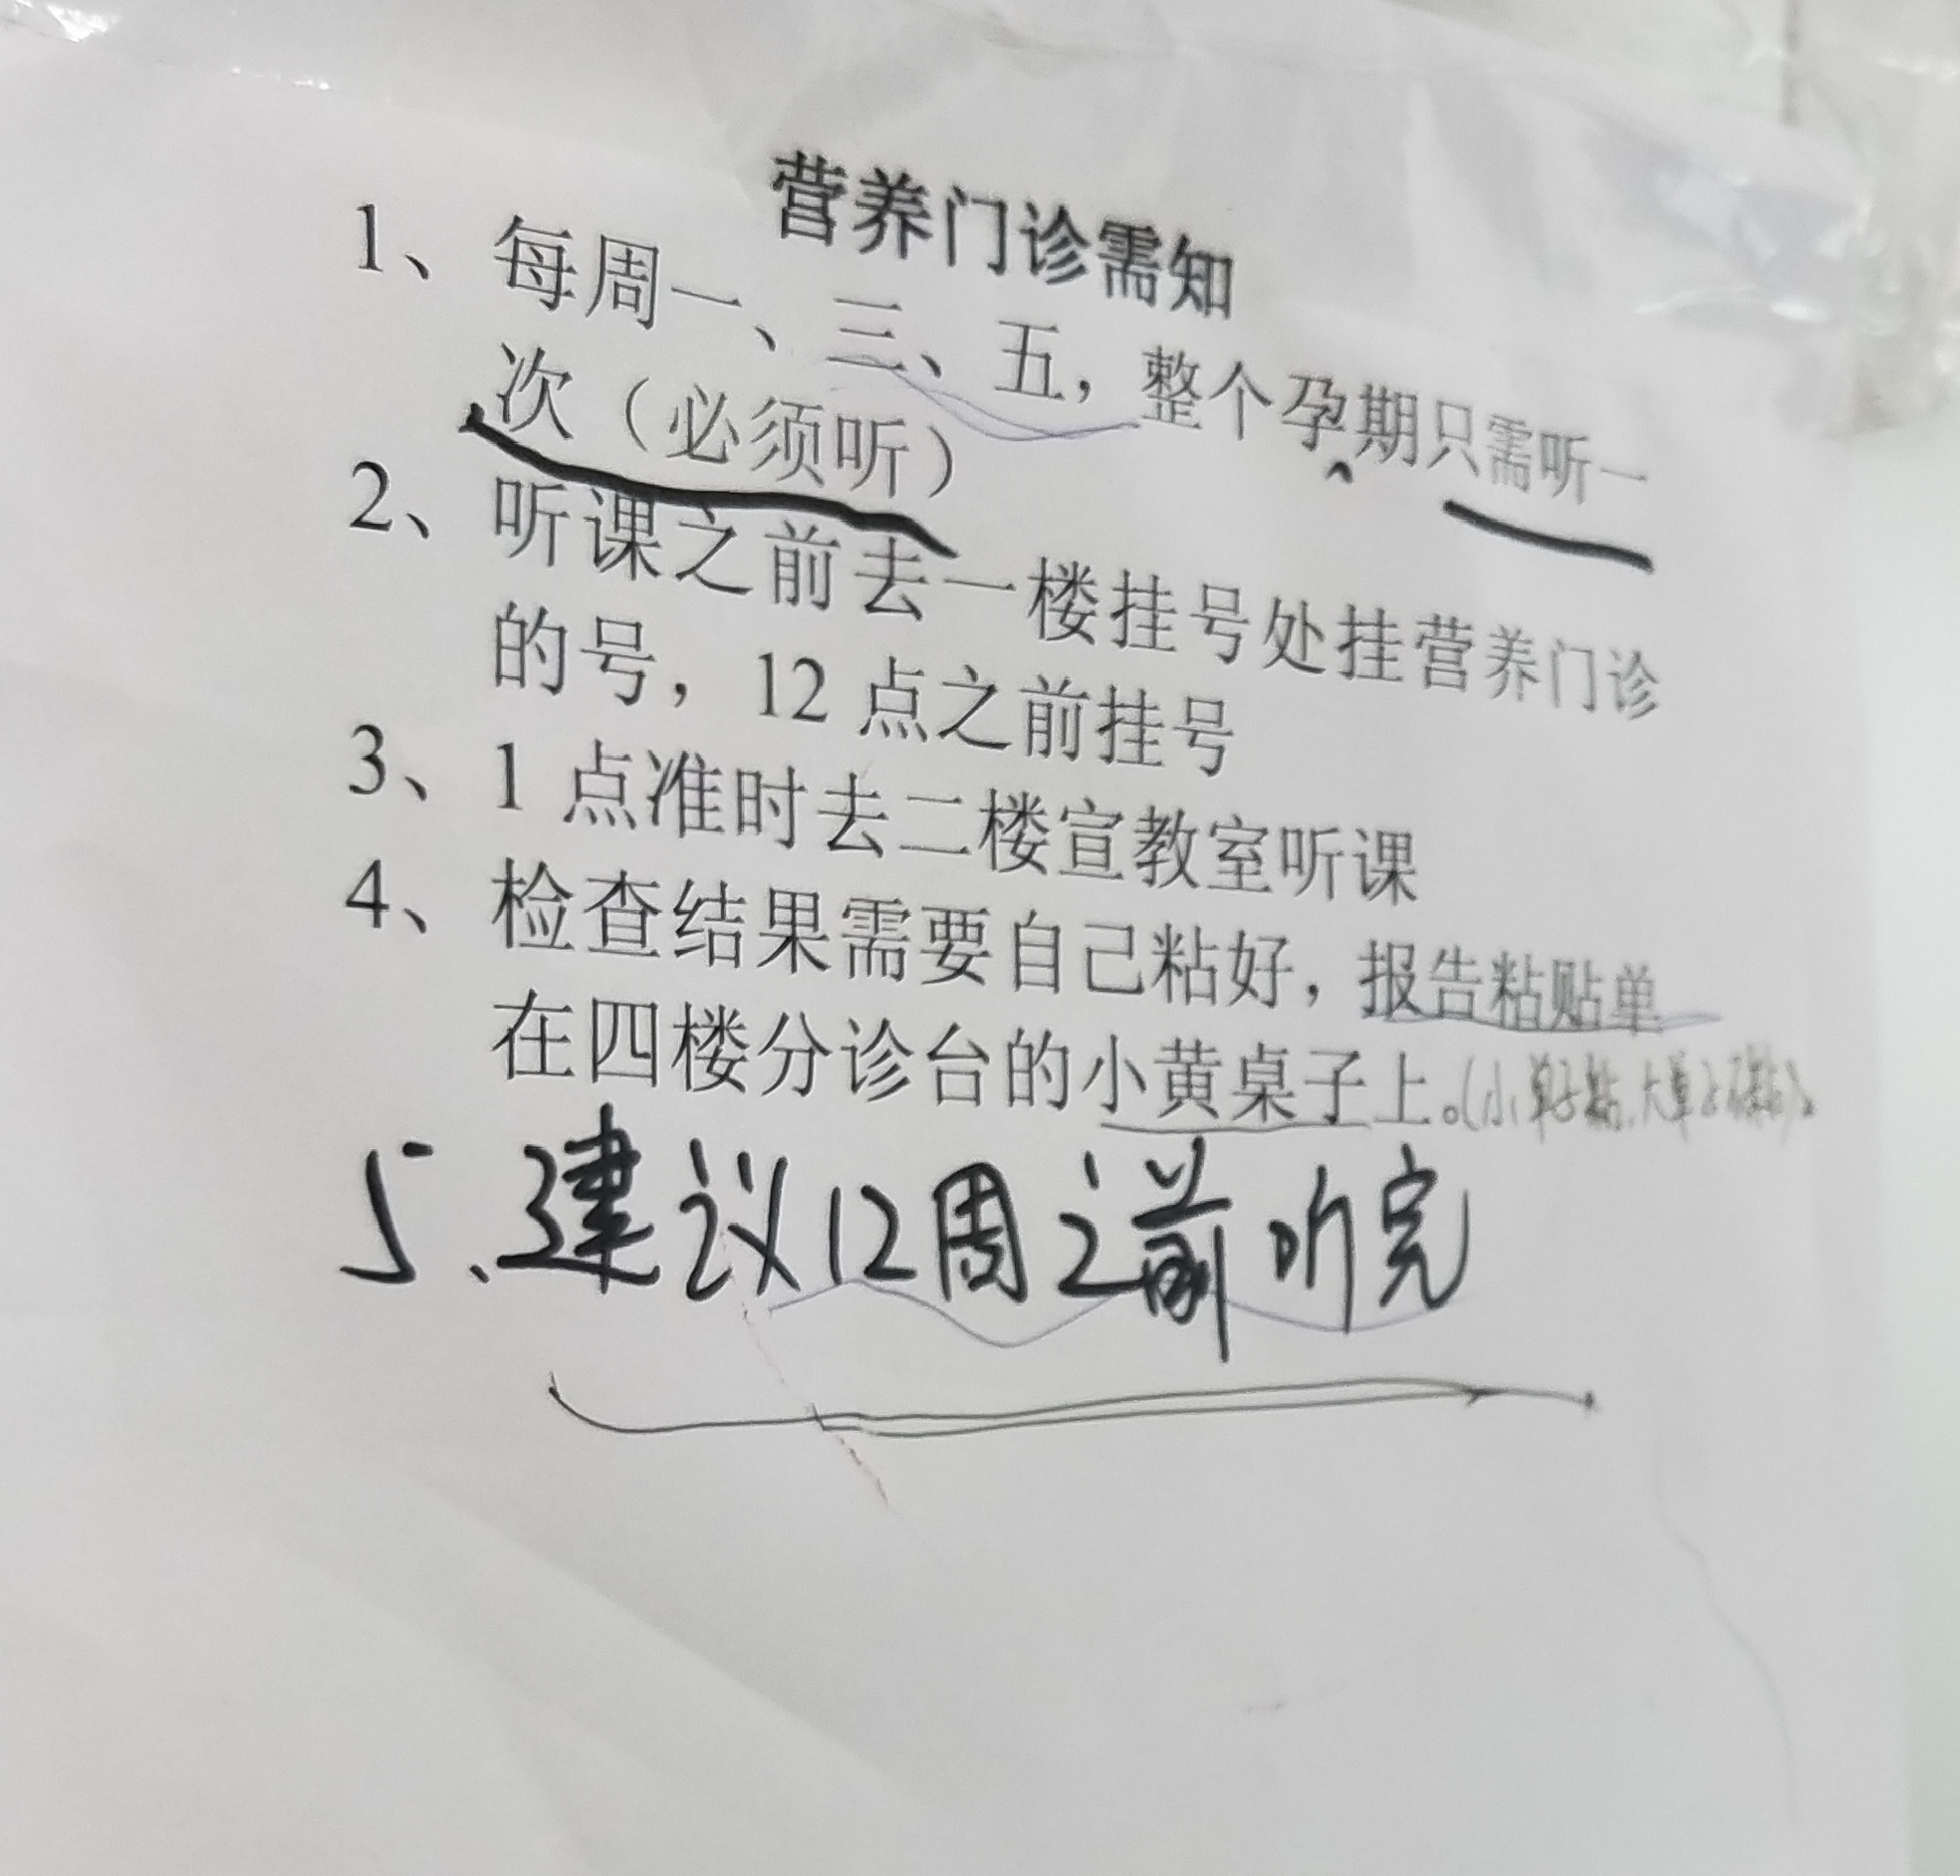 包含北京市海淀妇幼保健院医院的历史由来黄牛号贩子代挂的词条